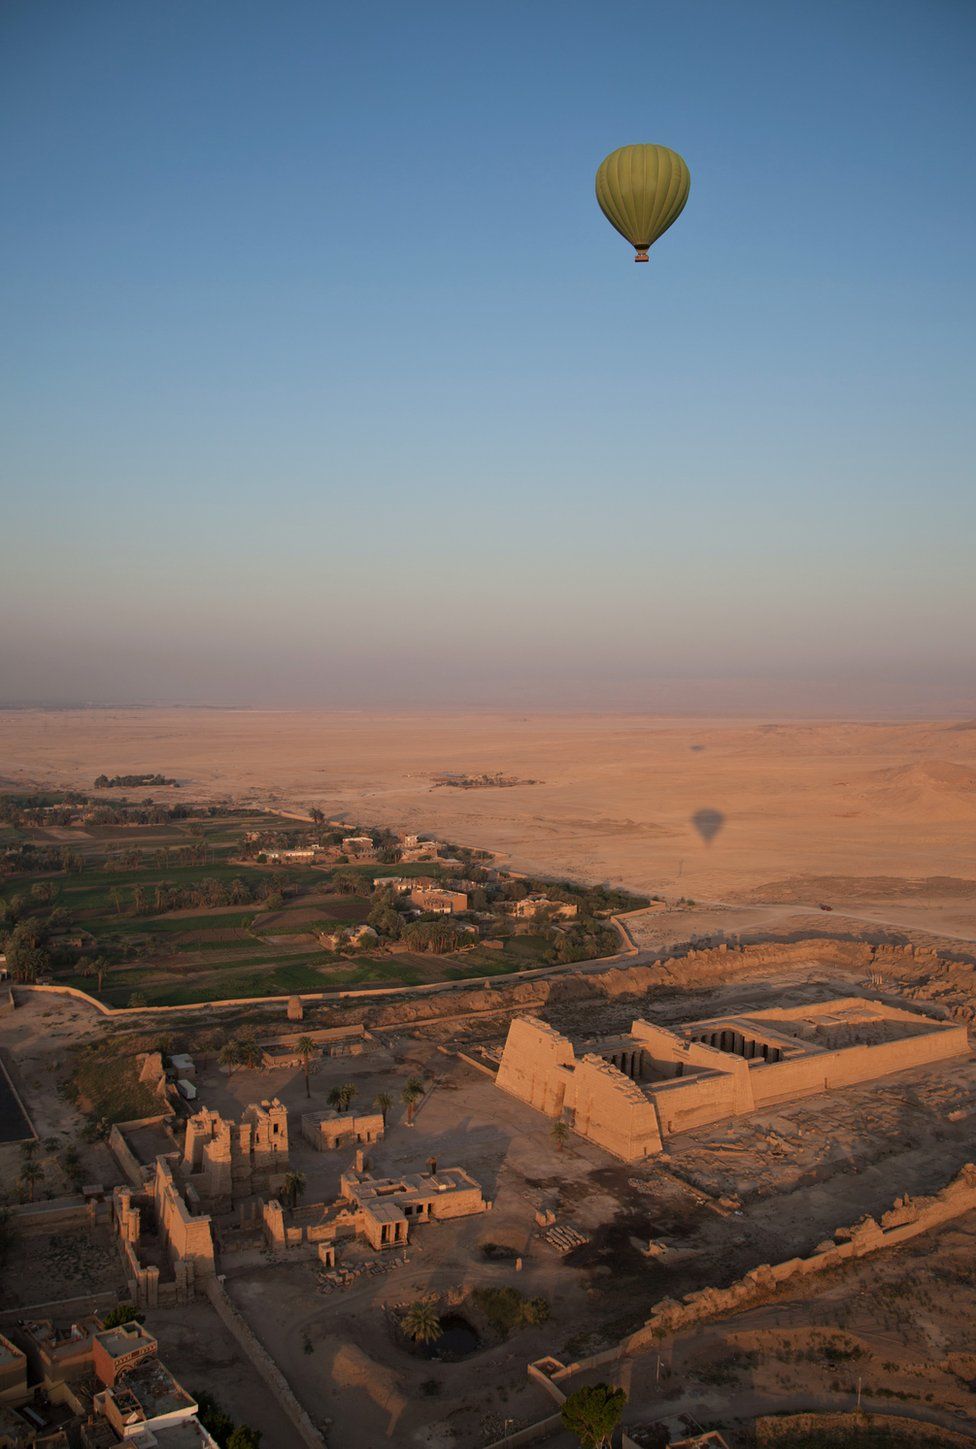 A hot air balloon flies over a temple